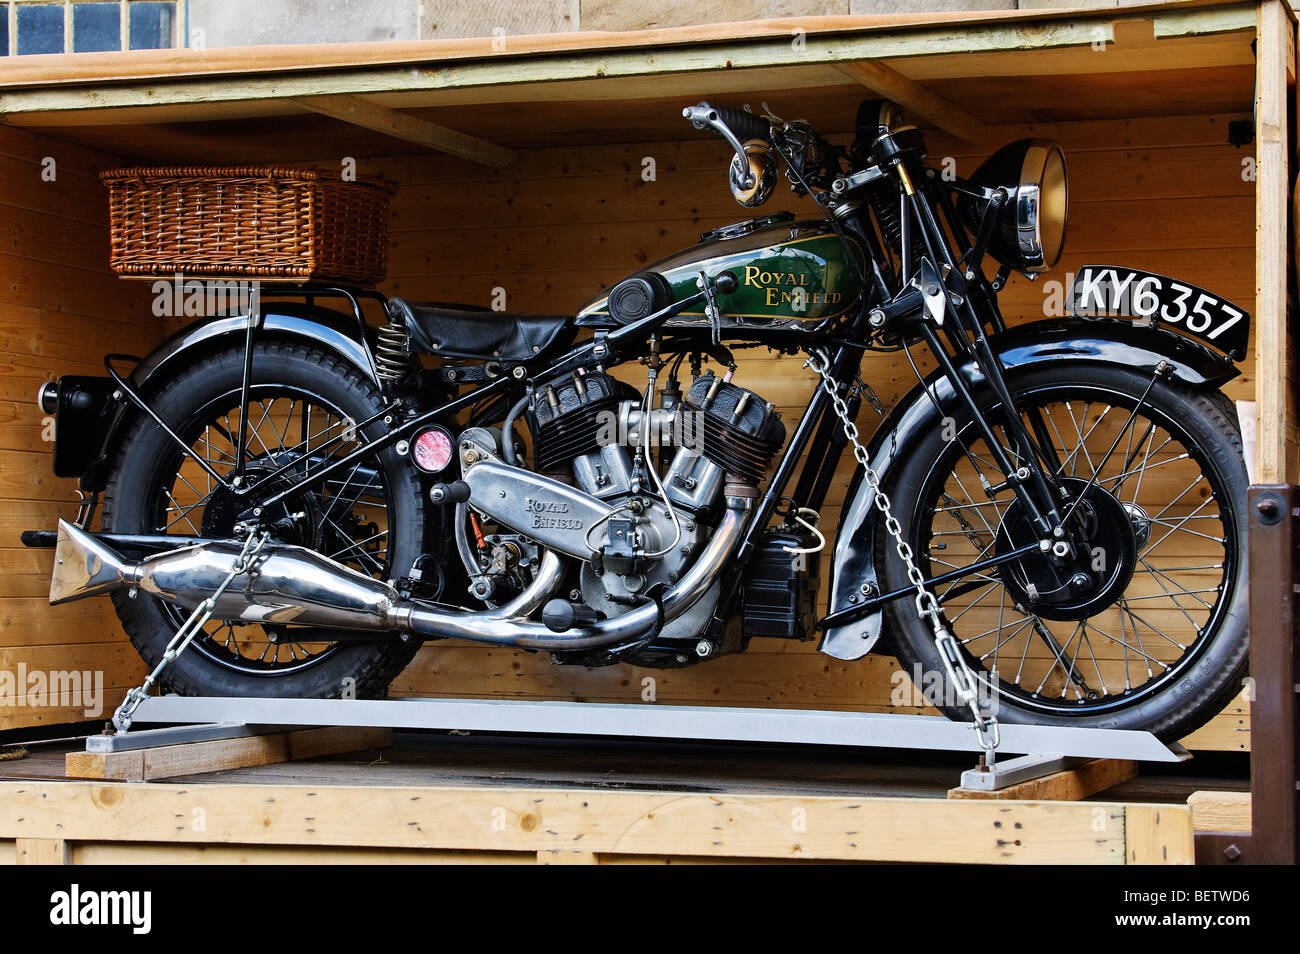 Royal Enfield Moto Foto Stock